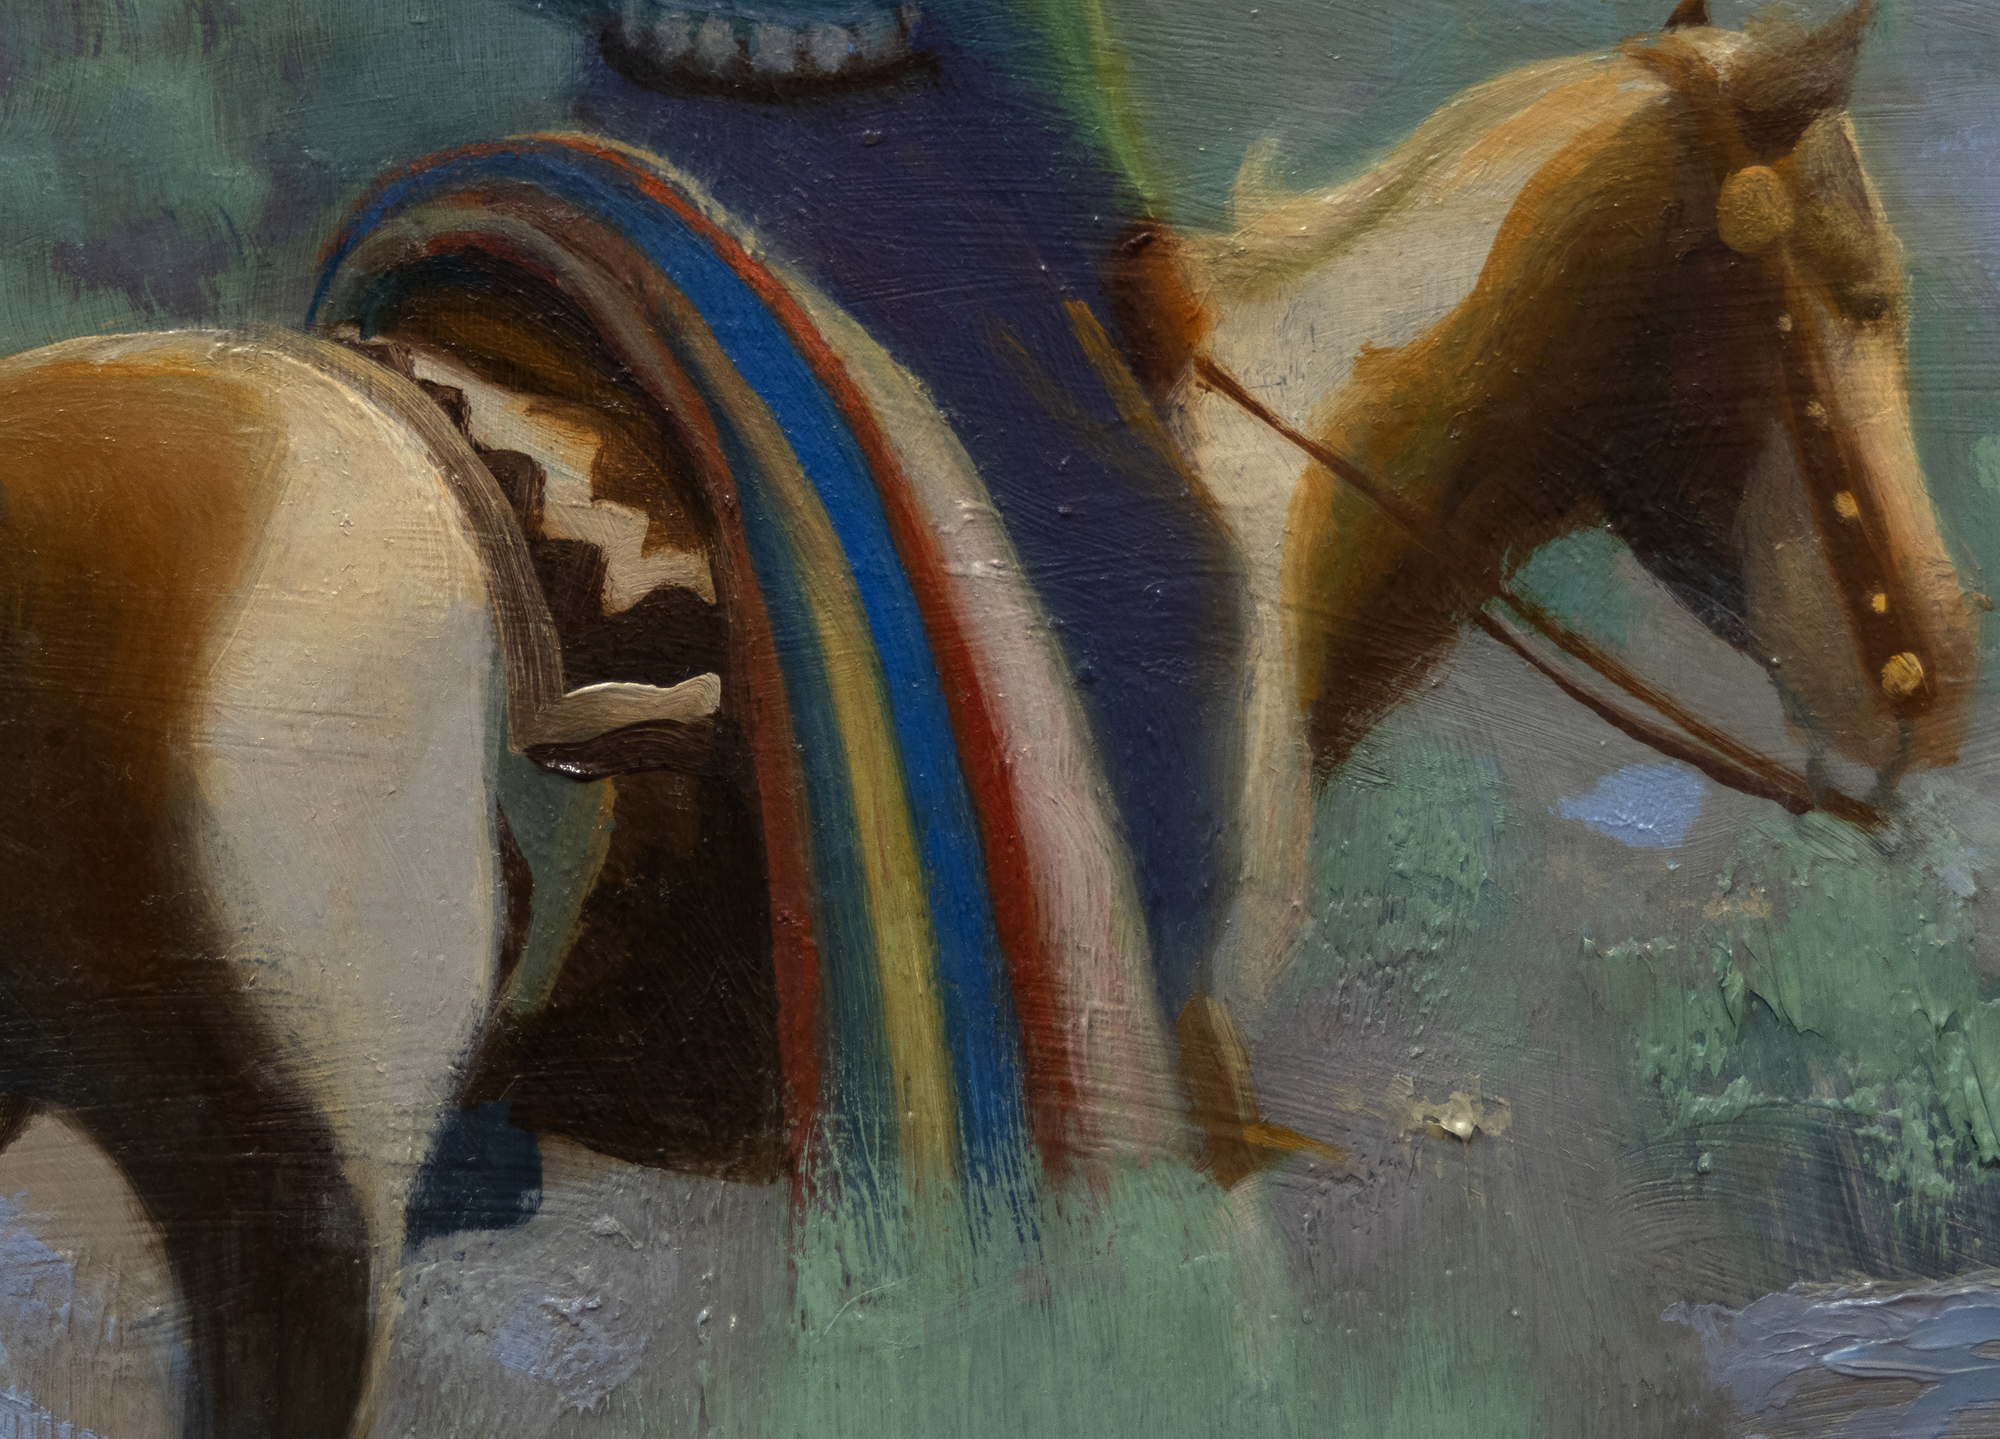 Gerald Curtis Delano ist bekannt für seinen unverwechselbaren Malstil, den er &quot;designten Realismus&quot; nannte. Seine Ausbildung bei N. C. Wyeth ermöglichte es ihm, eine Reihe von illustrativen bis expressiven Ansätzen zu verwenden, immer mit sorgfältiger und tadelloser Gestaltung. Die Gemälde wie das Navajo Camp sind bekannt für ihre sanften, modulierten Farben, die klaren und anmutigen Kompositionen und die Einfachheit der Formen, die jedes Thema auf seine wesentliche Natur reduzieren. Sie zeigen Delanos scharfes Auge, sein Verständnis und seine Fähigkeit, die Farben und die Noblesse des Lebensstils der Navajos einzufangen. Wie in den meisten seiner Werke nimmt der Himmel einen großen Teil der Leinwand ein, und die Figuren verleihen der Szene einen gewissen Maßstab. Diese Elemente wirken zusammen, um ein Gefühl von Weite und Gelassenheit zu vermitteln.